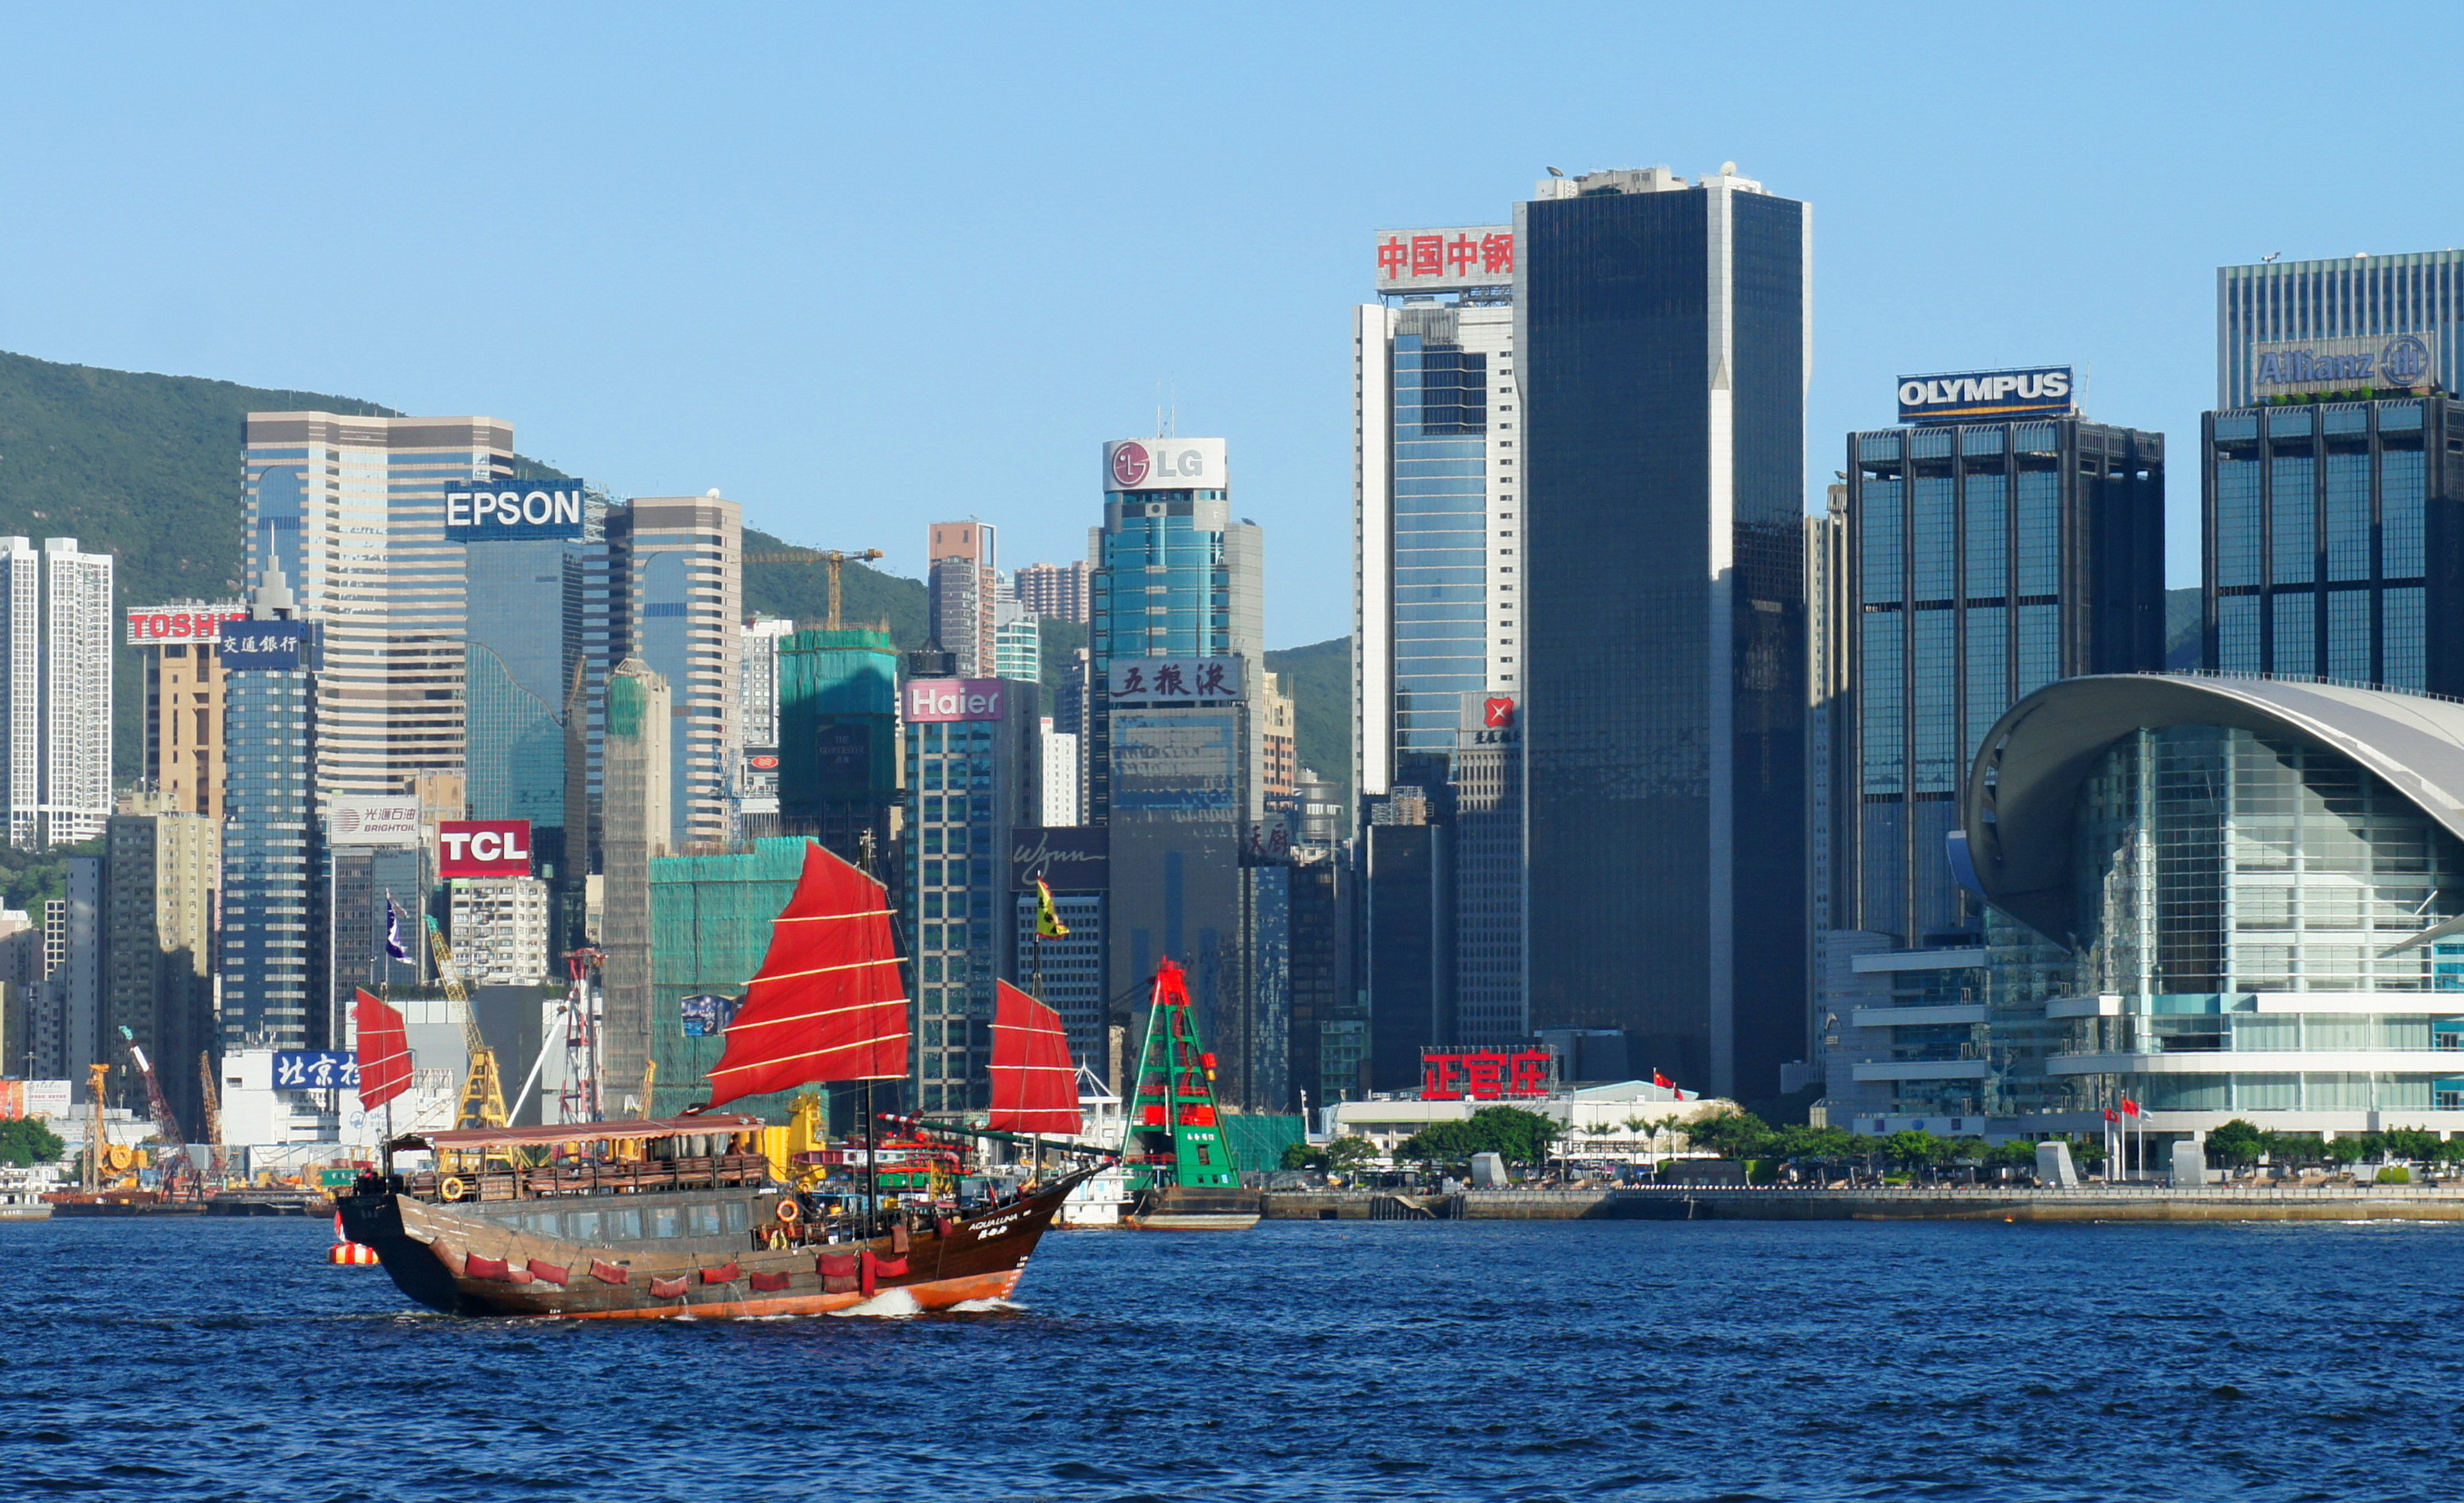 Ghé thăm vịnh Victoria – Bến cảng sầm uất nhất Hongkong - ảnh 6